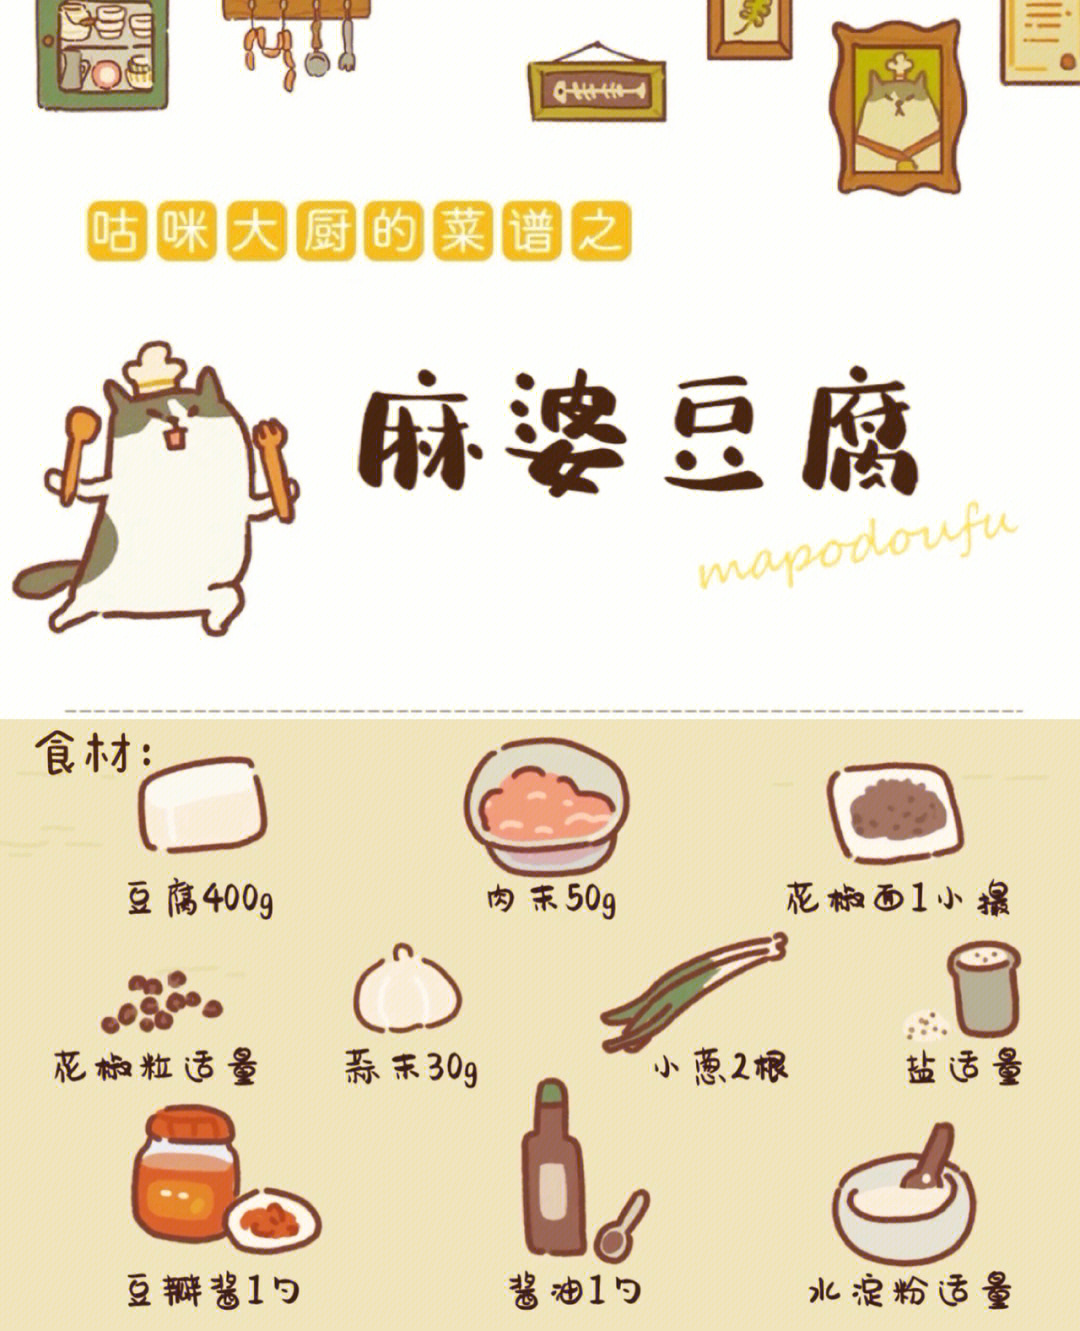 麻婆豆腐的简笔画图片